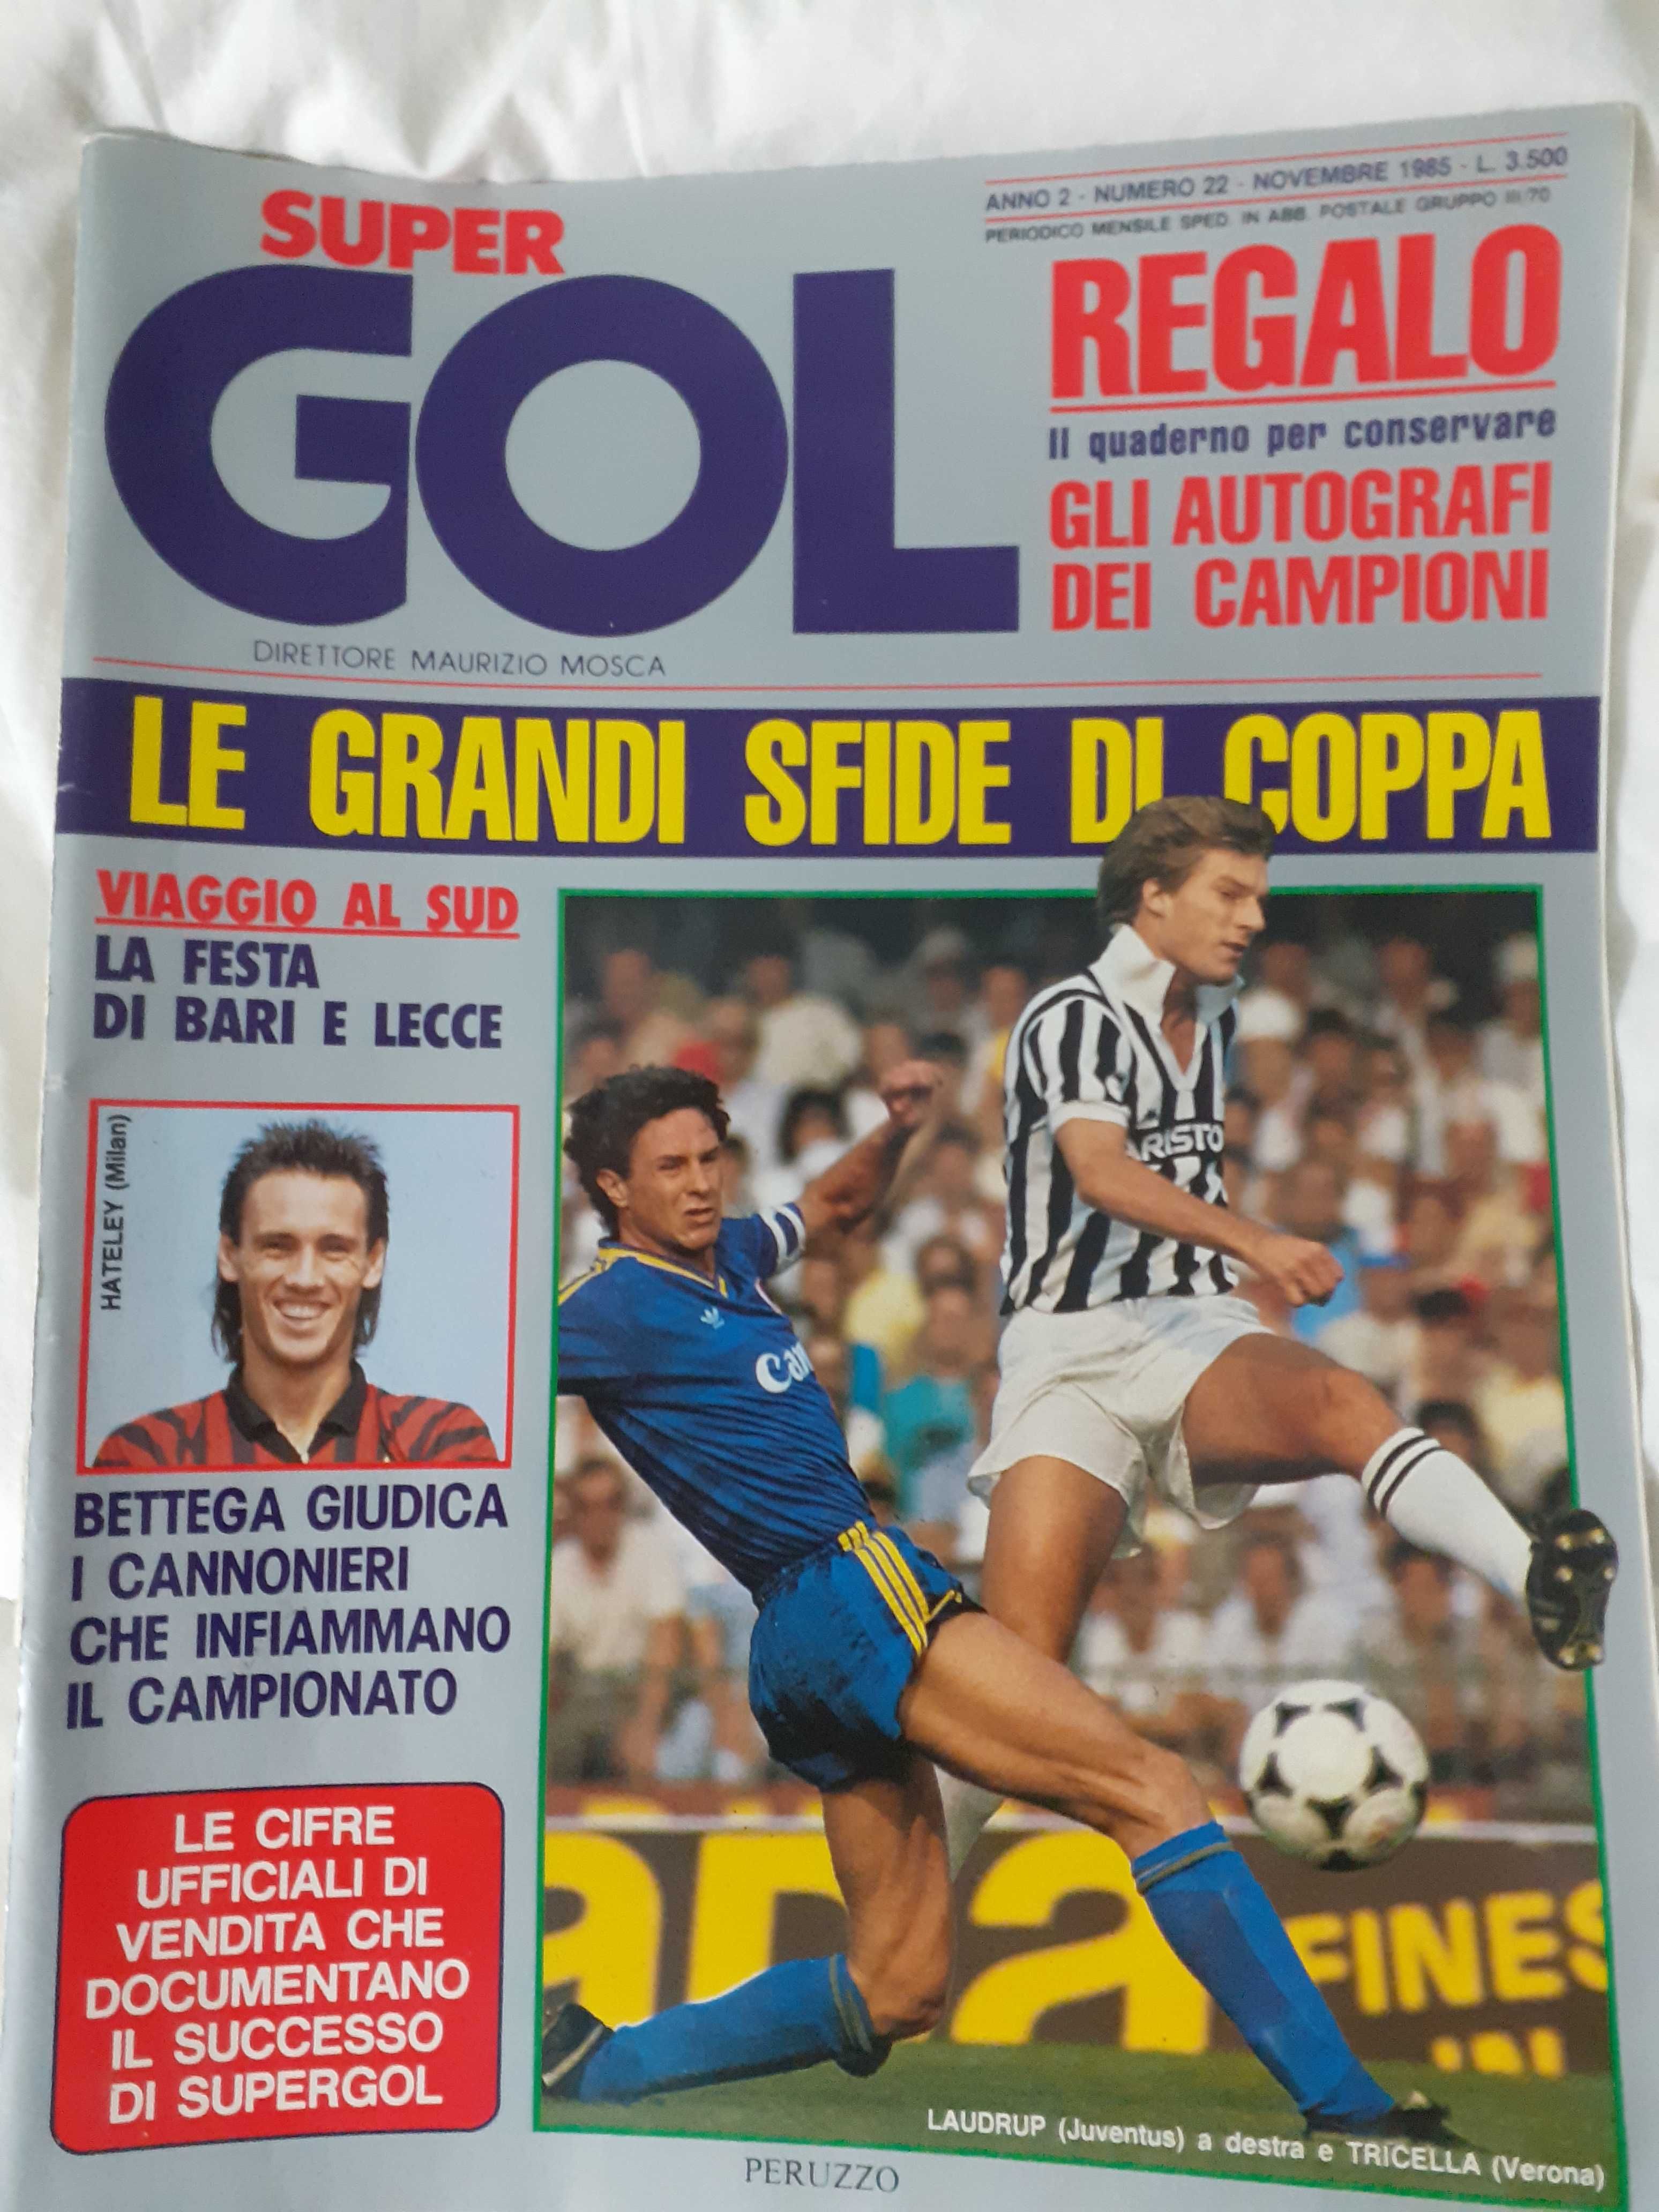 Super Gol, revista italiana de futebol